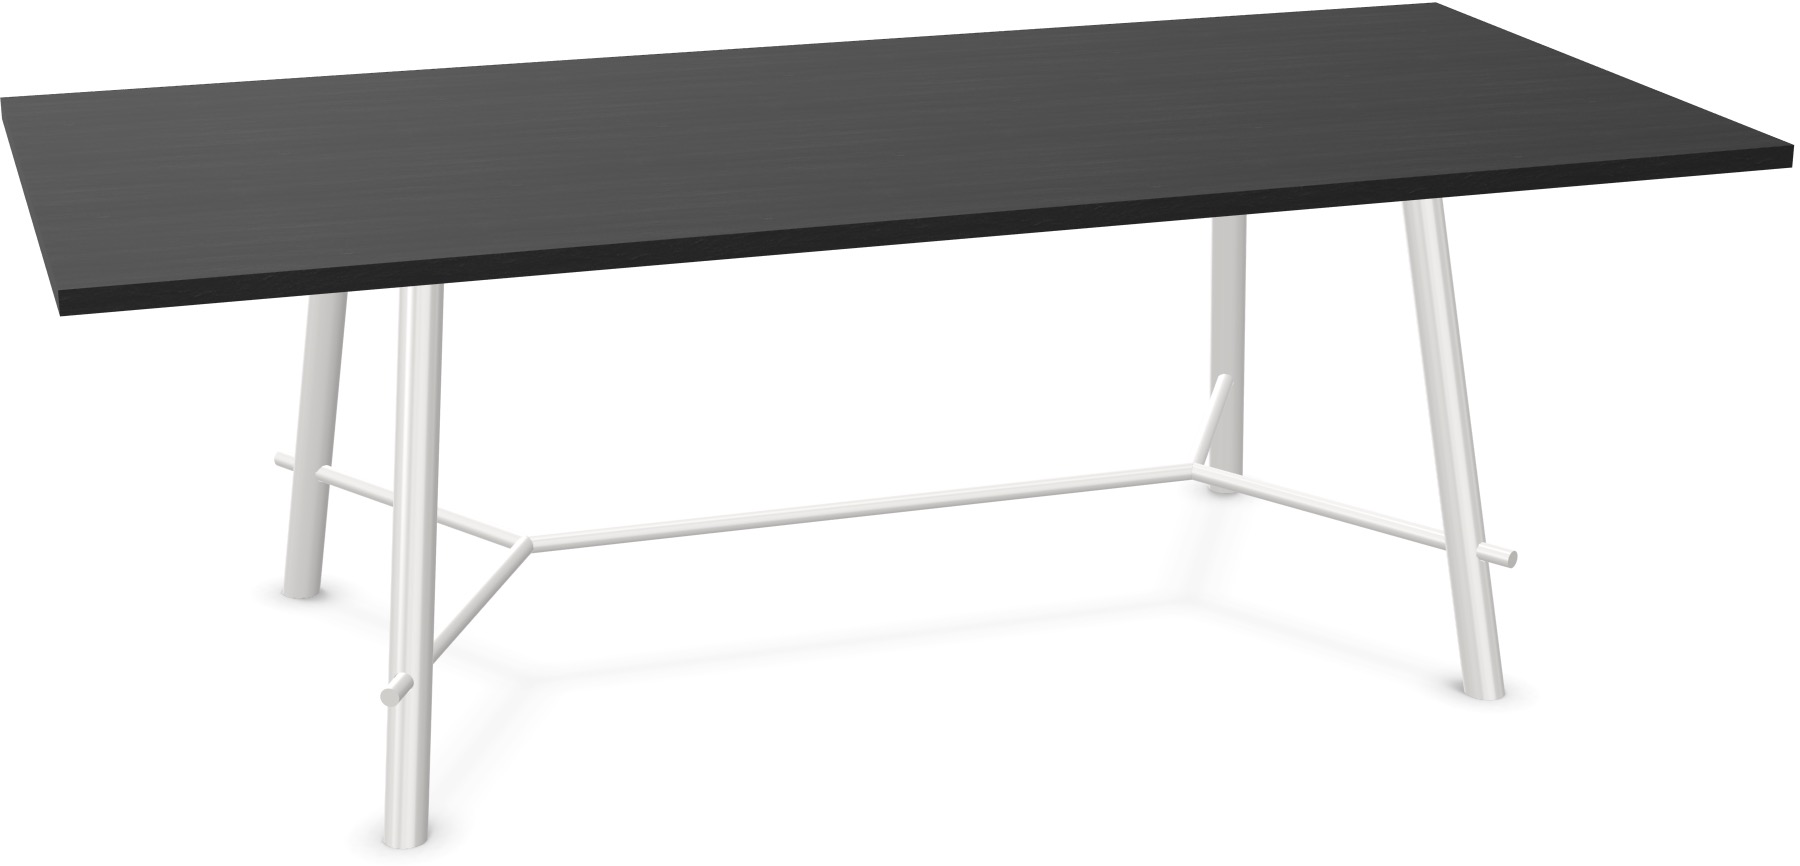 Record Living Maxi Tisch in Eiche schwarz / Weiss präsentiert im Onlineshop von KAQTU Design AG. Esstisch ist von Infiniti Design